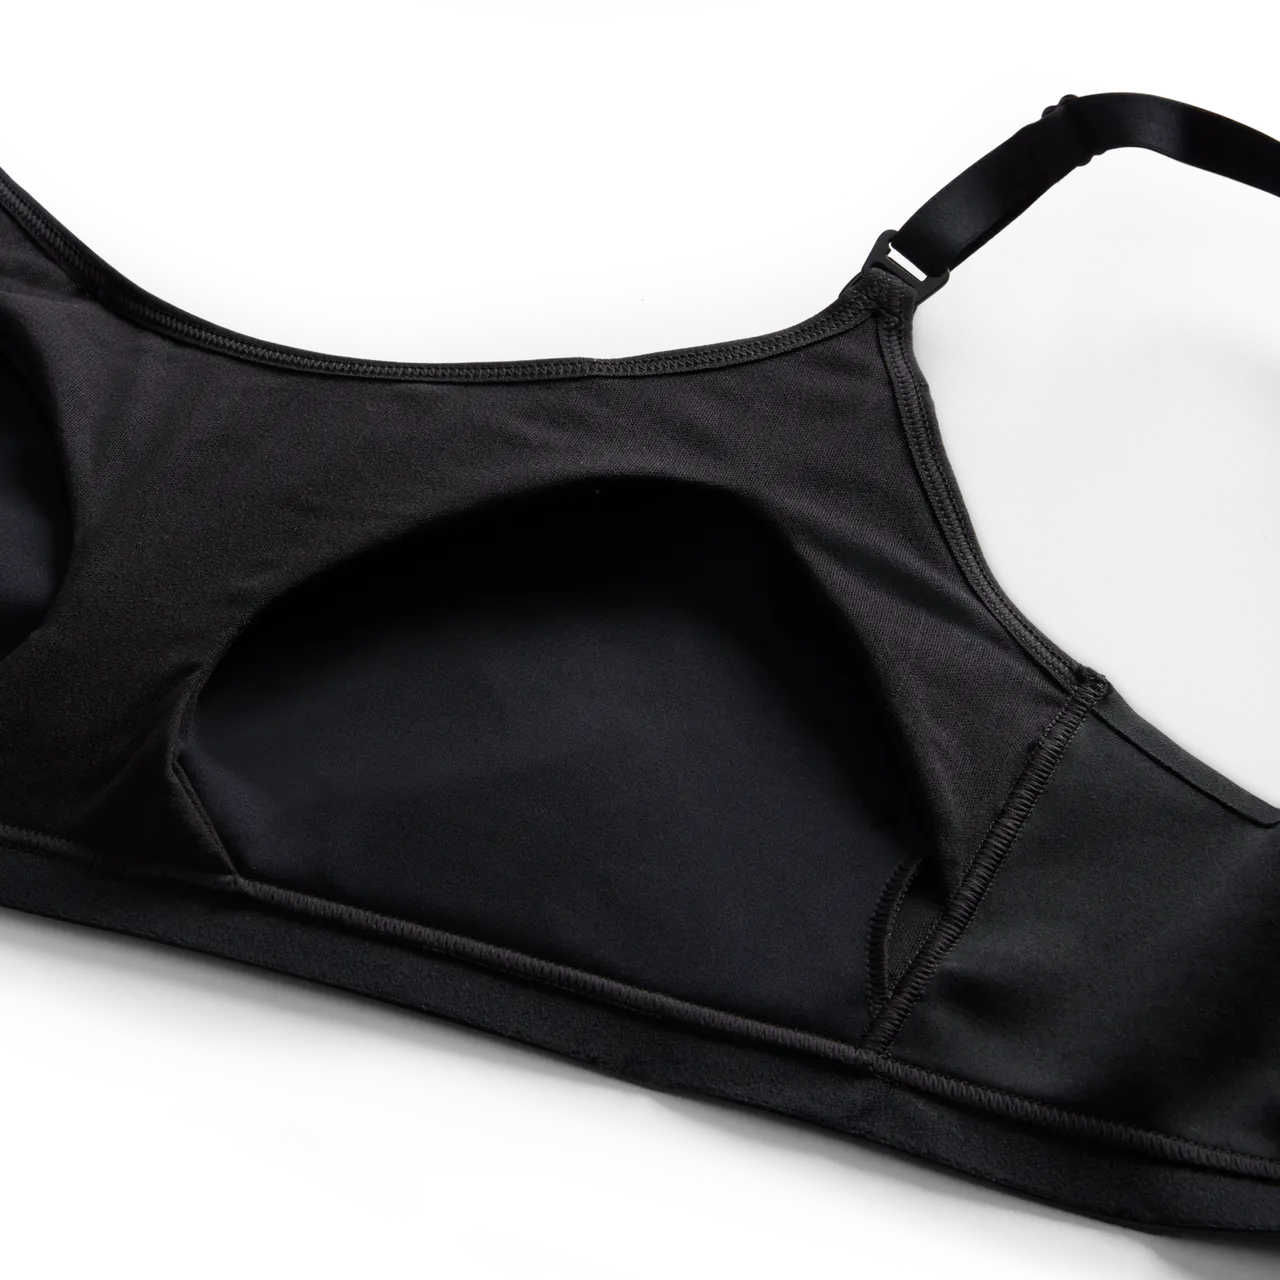 Nike Alate (M) sport-bh voor borstvoeding met lichte ondersteuning en lichte voering (zwangerschapskleding) - Zwart